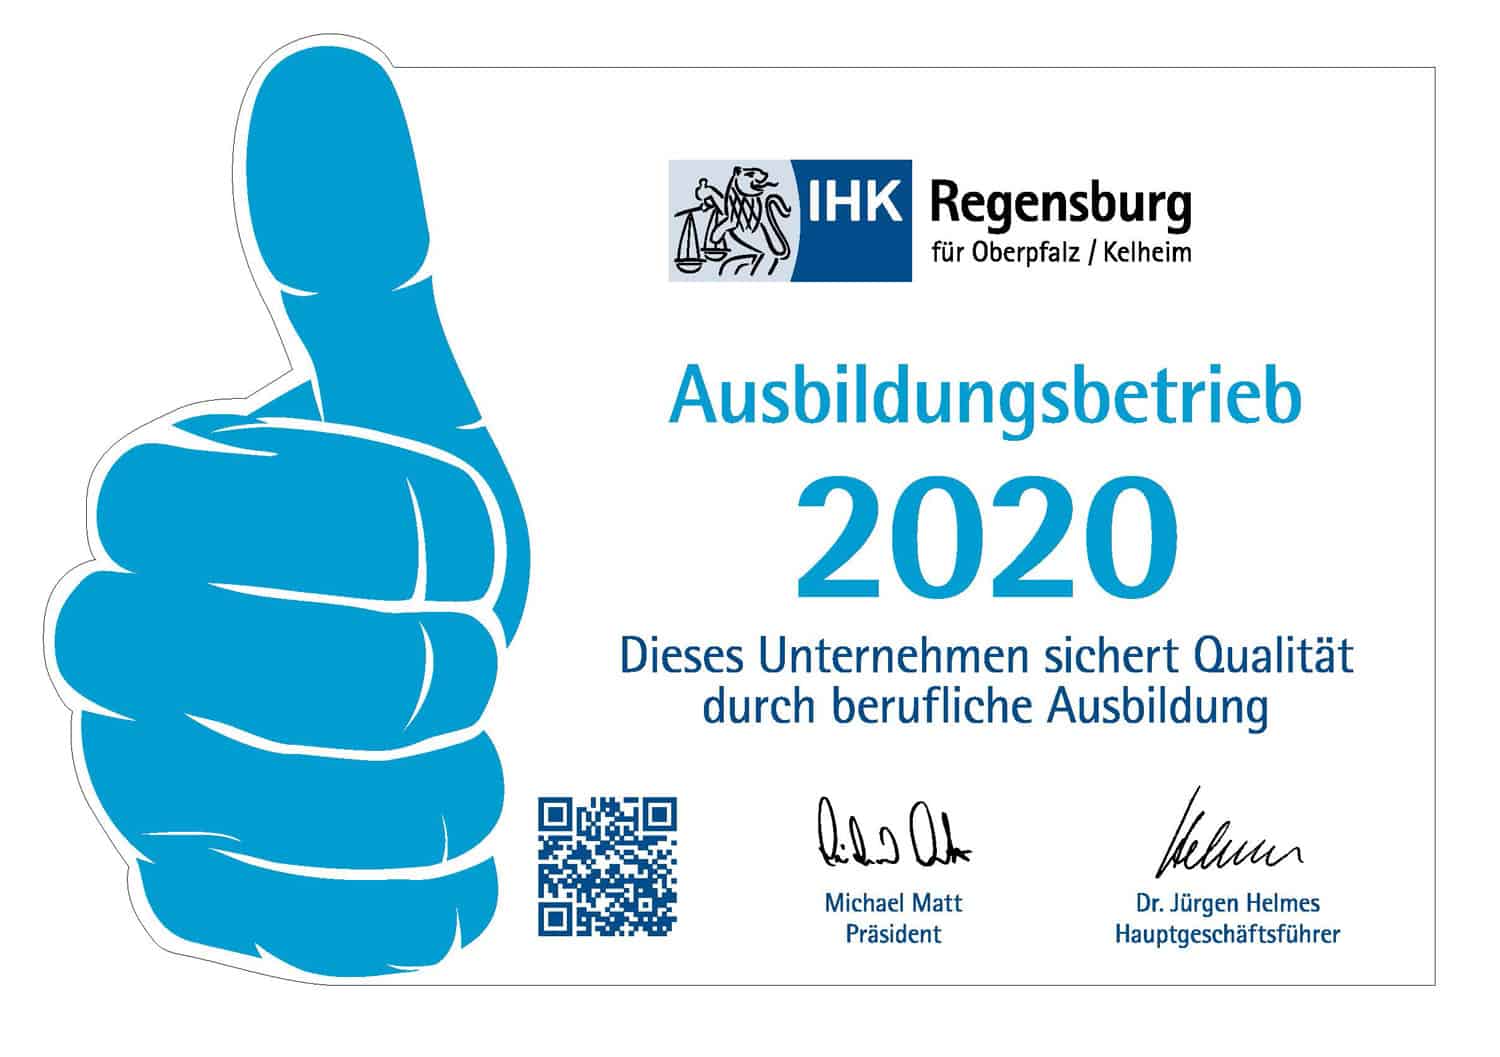 Offizieller Ausbildungsbetrieb der IHK Regensburg